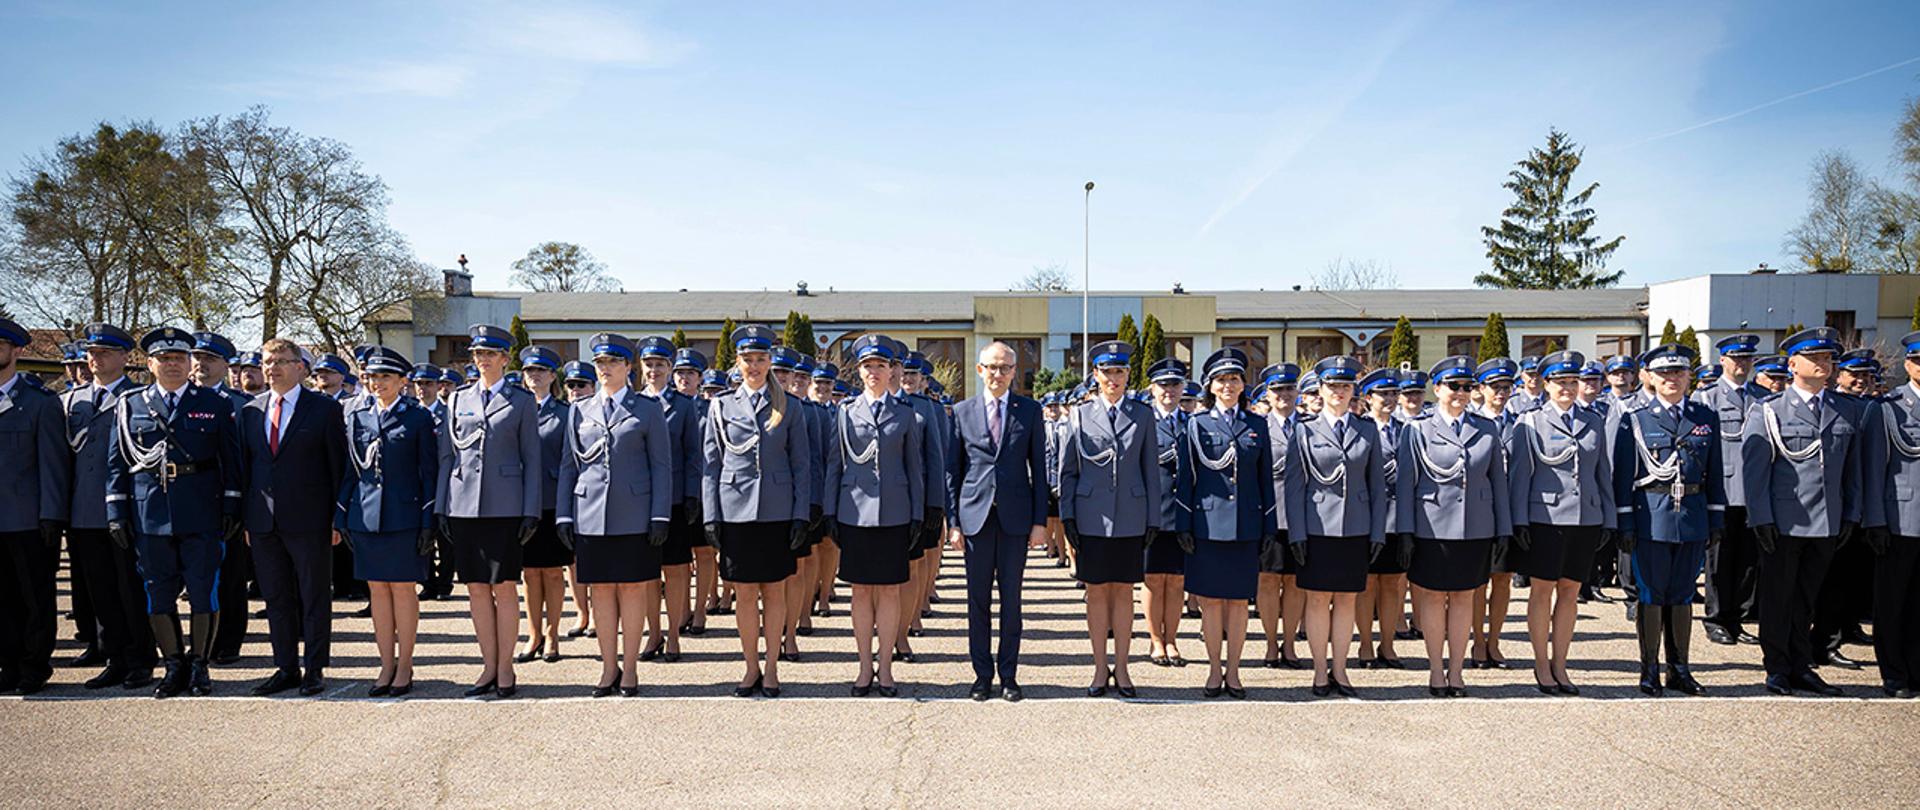 Na zdjęciu widać m.in. wiceministra Błażeja Pobożego i promowanych policjantów na pierwszy stopień oficerski.